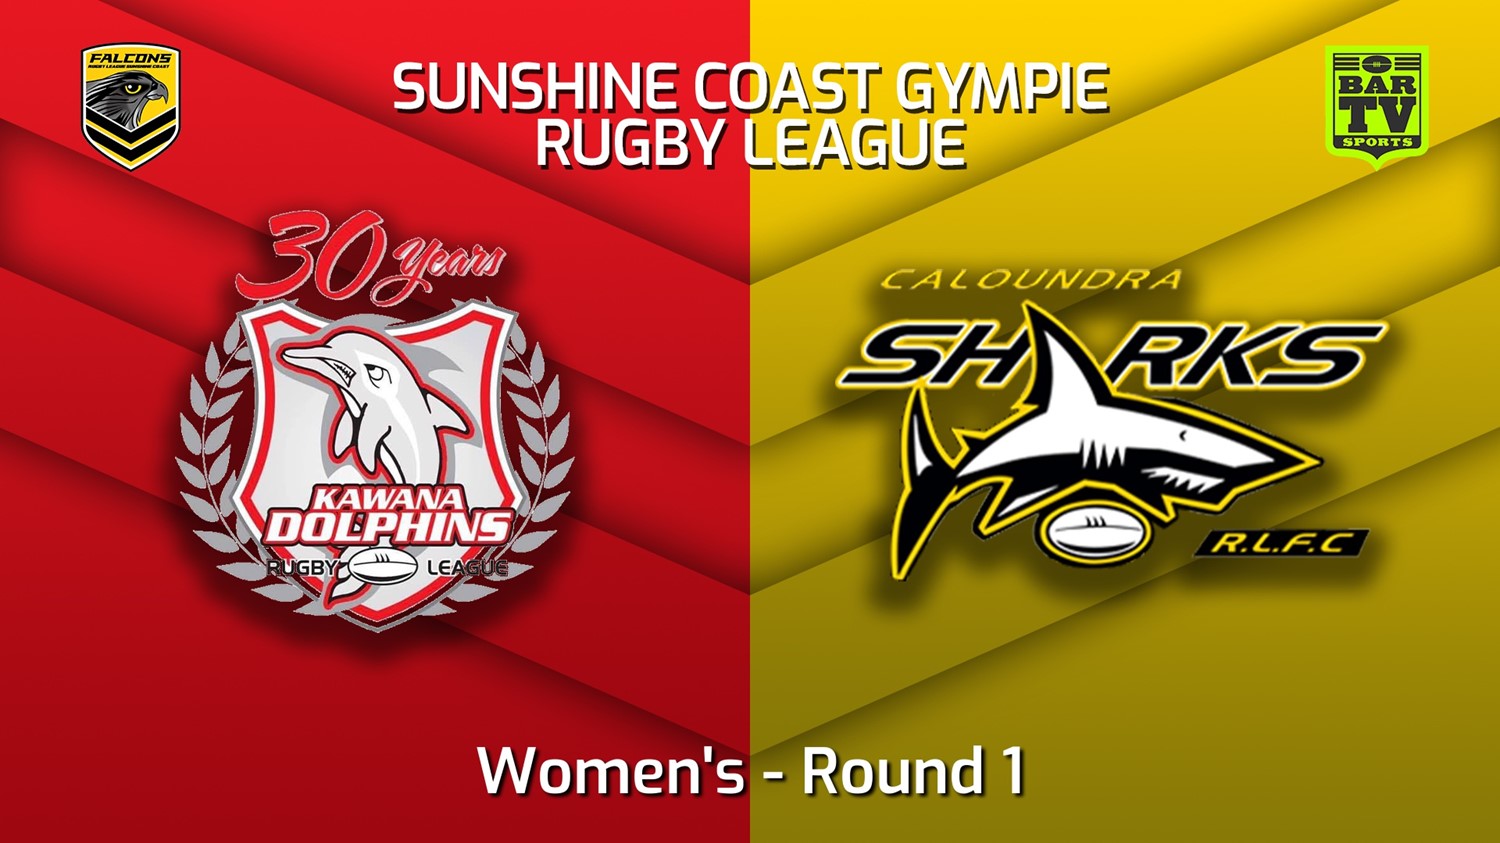 220402-2022 Sunshine Coast Gympie Rugby League Round 1 - Women's - Kawana Dolphins v Caloundra Sharks Minigame Slate Image